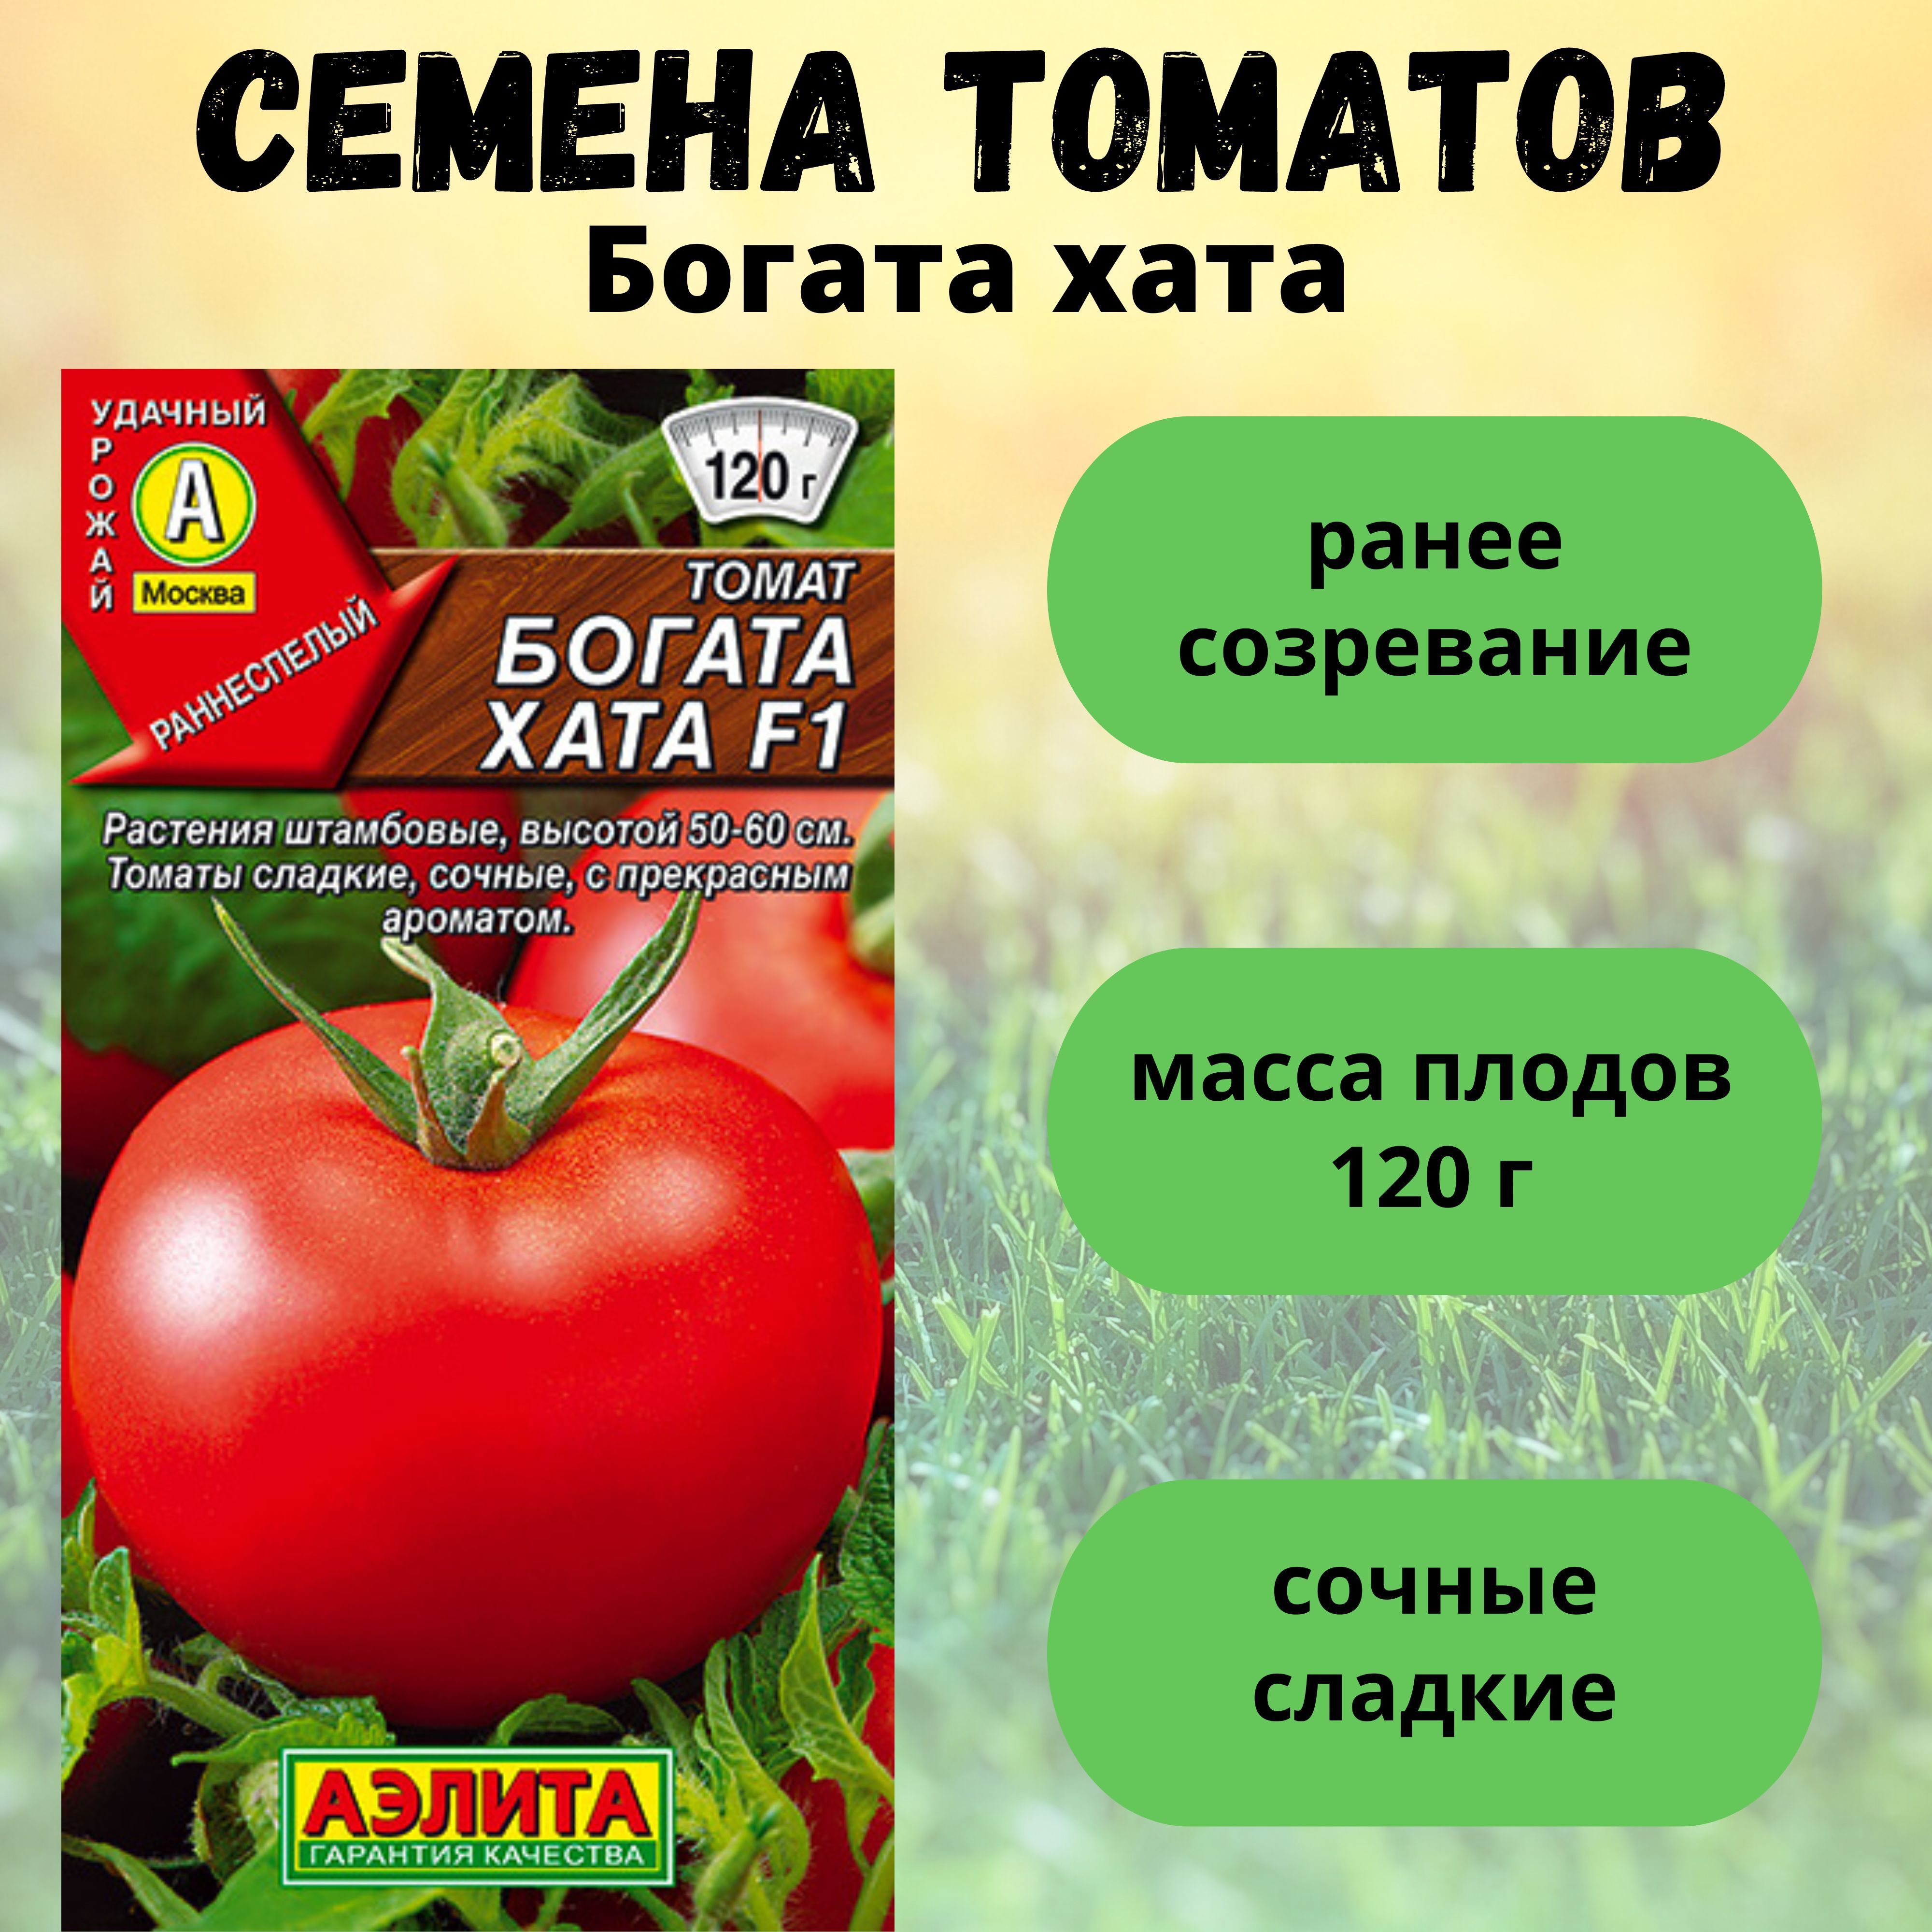 Томат богата хата описание и отзывы. Семена томатов богата хата.